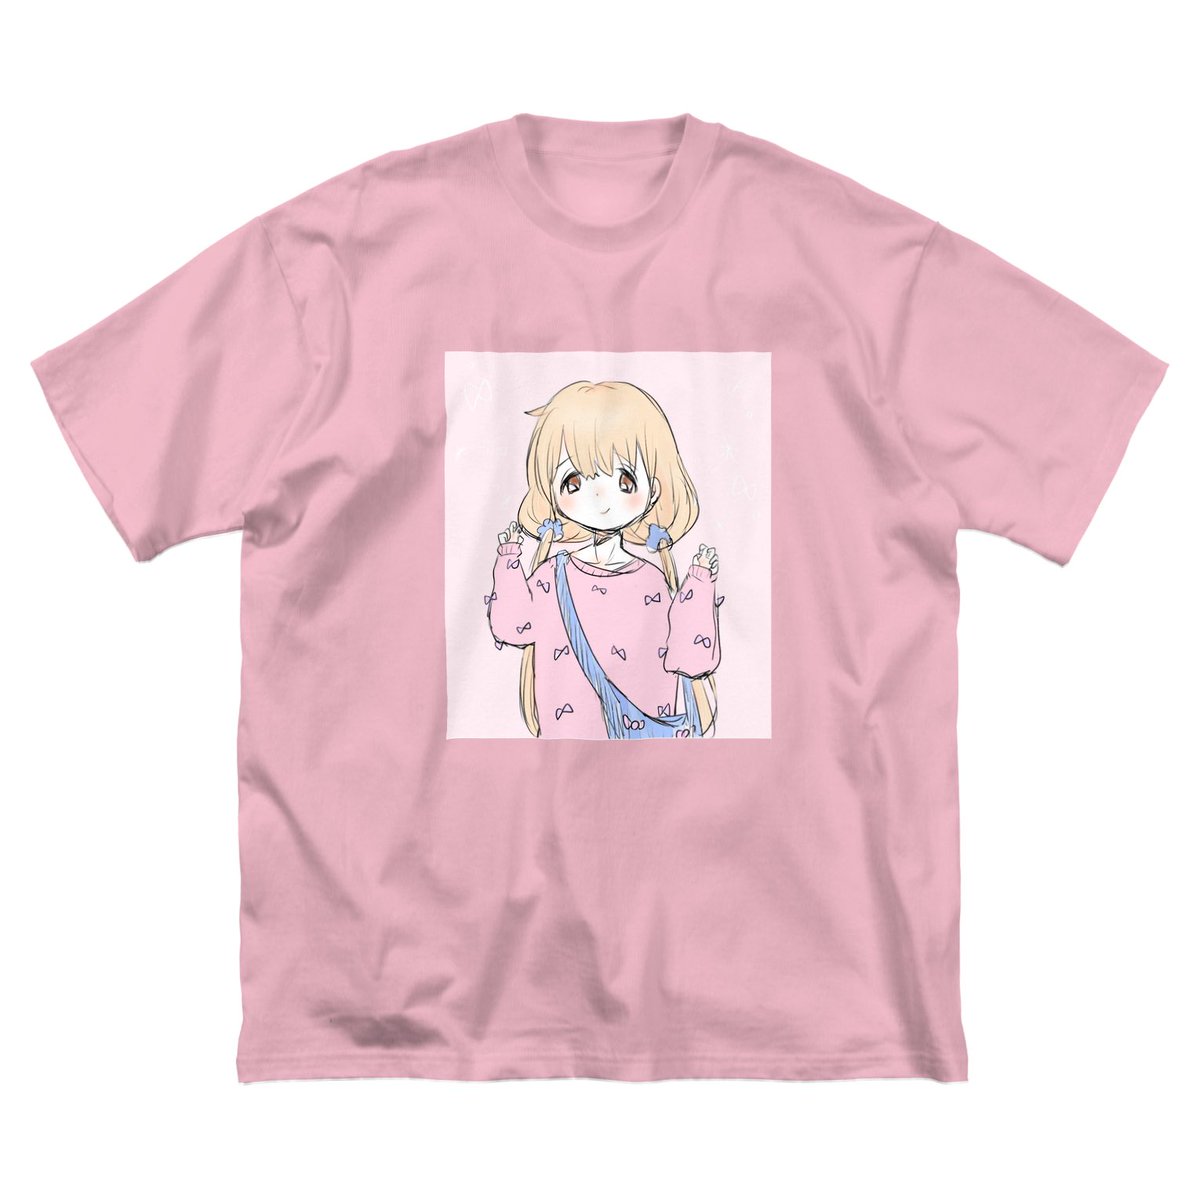 なでしこ デザイン グッズ販売 流行りのビッグシルエットtシャツはtシャツのベースの色をお選びいただけますよ 只今お値下げ中 Suzuri Suzuriで販売中 Tシャツ イラスト リボンの女の子 なでしこ デザイン Nadeshiko のビッグ